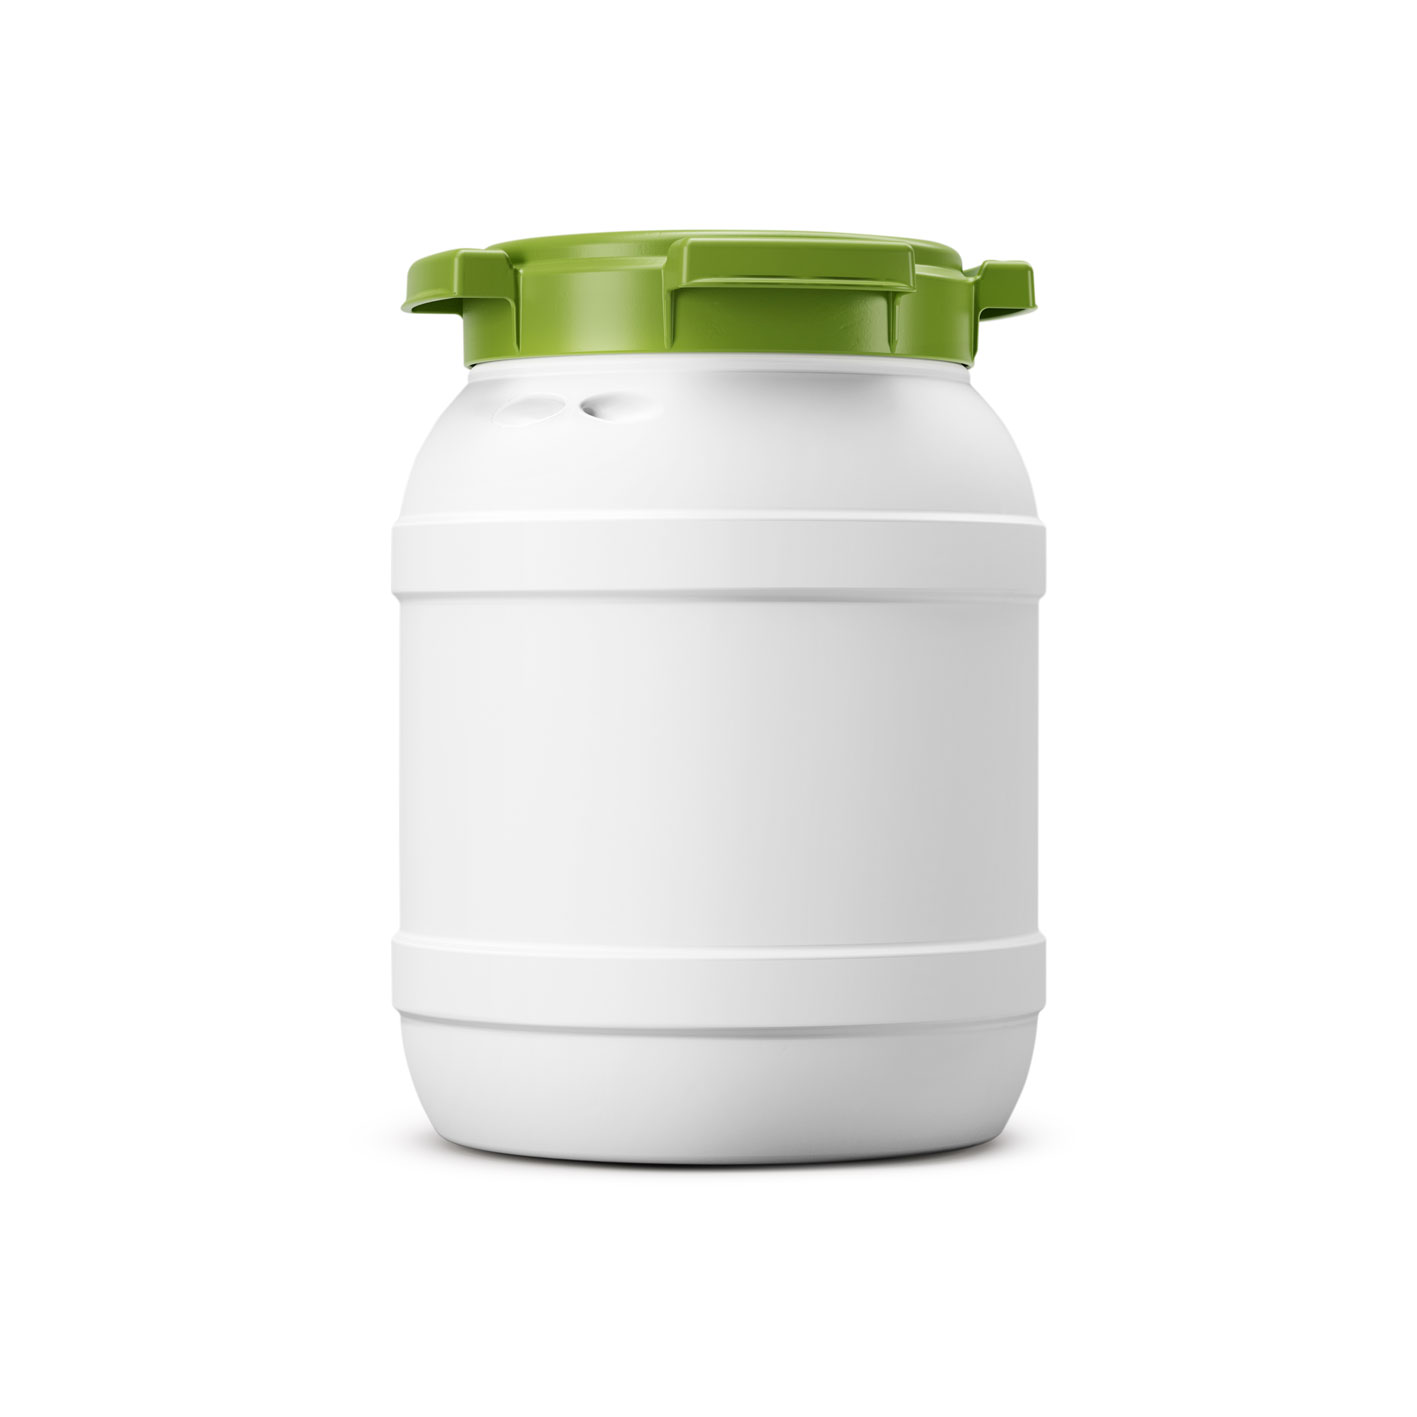 6 liter biobased Wijdmonds vat